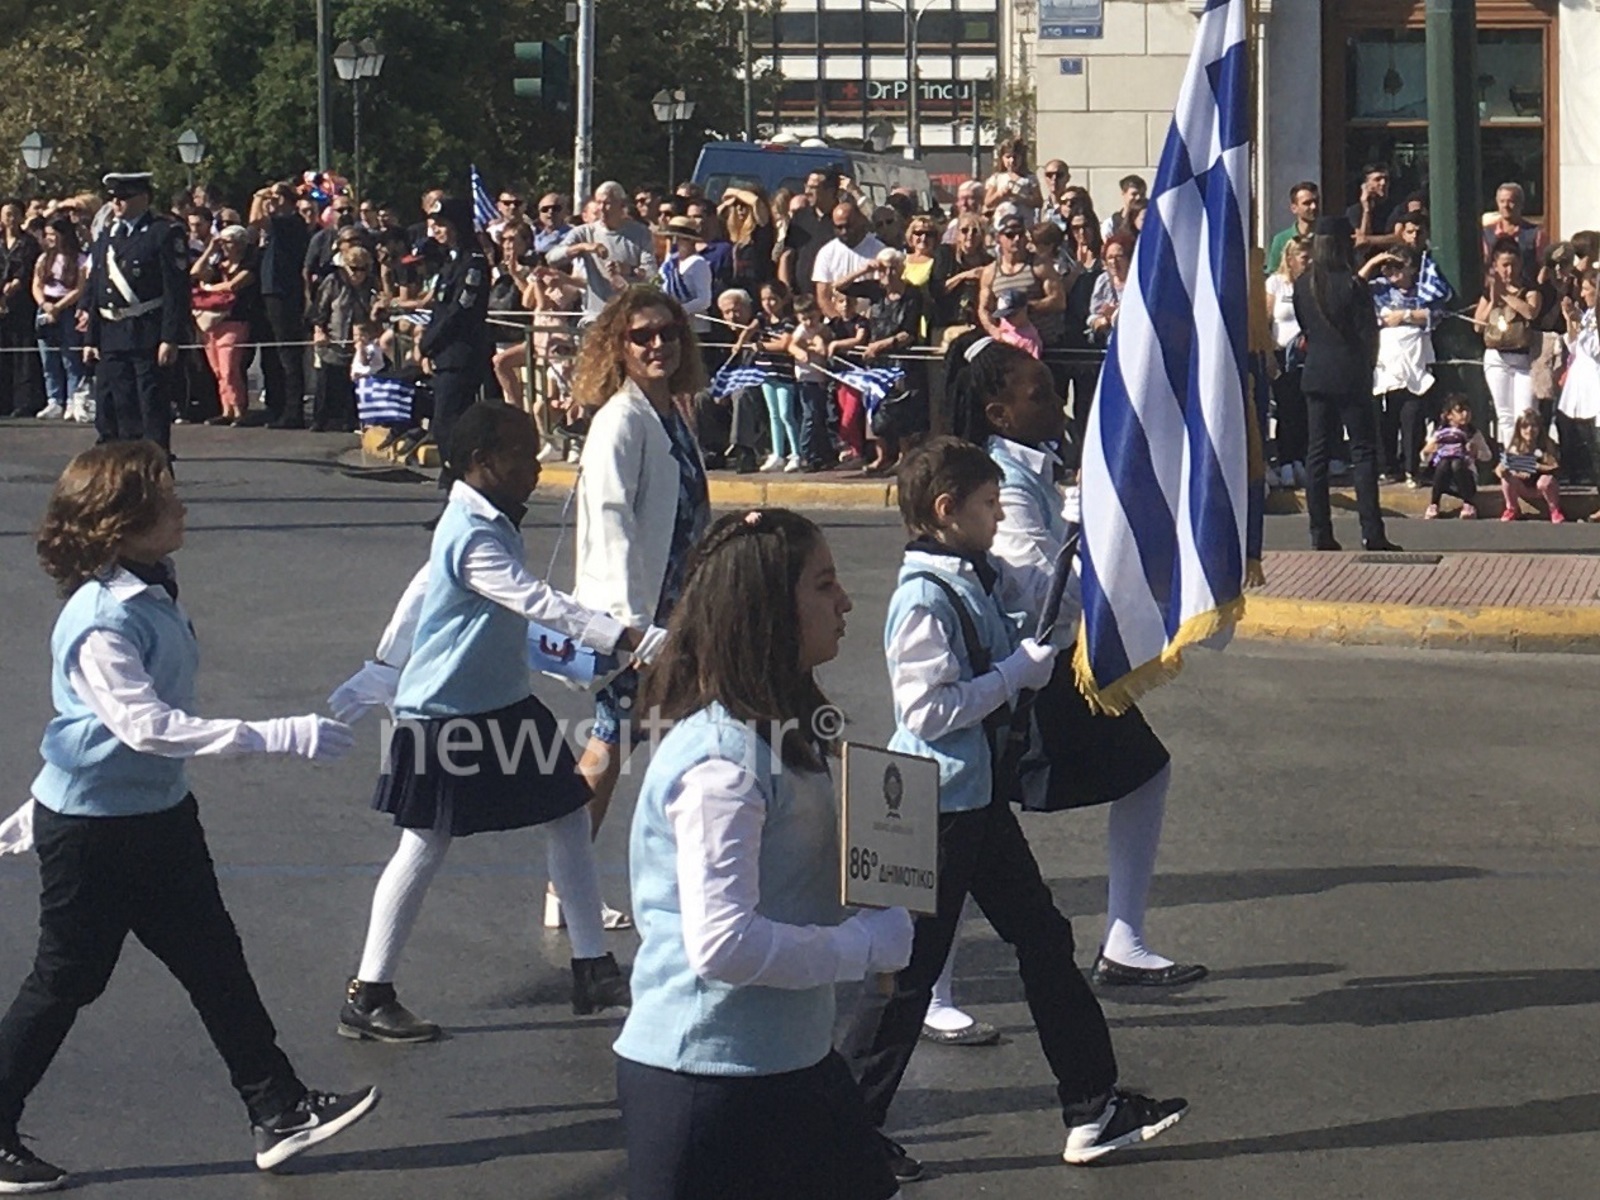 28η Οκτωβρίου: Εντυπωσιακές εικόνες στην μαθητική παρέλαση της Αθήνας [pics]